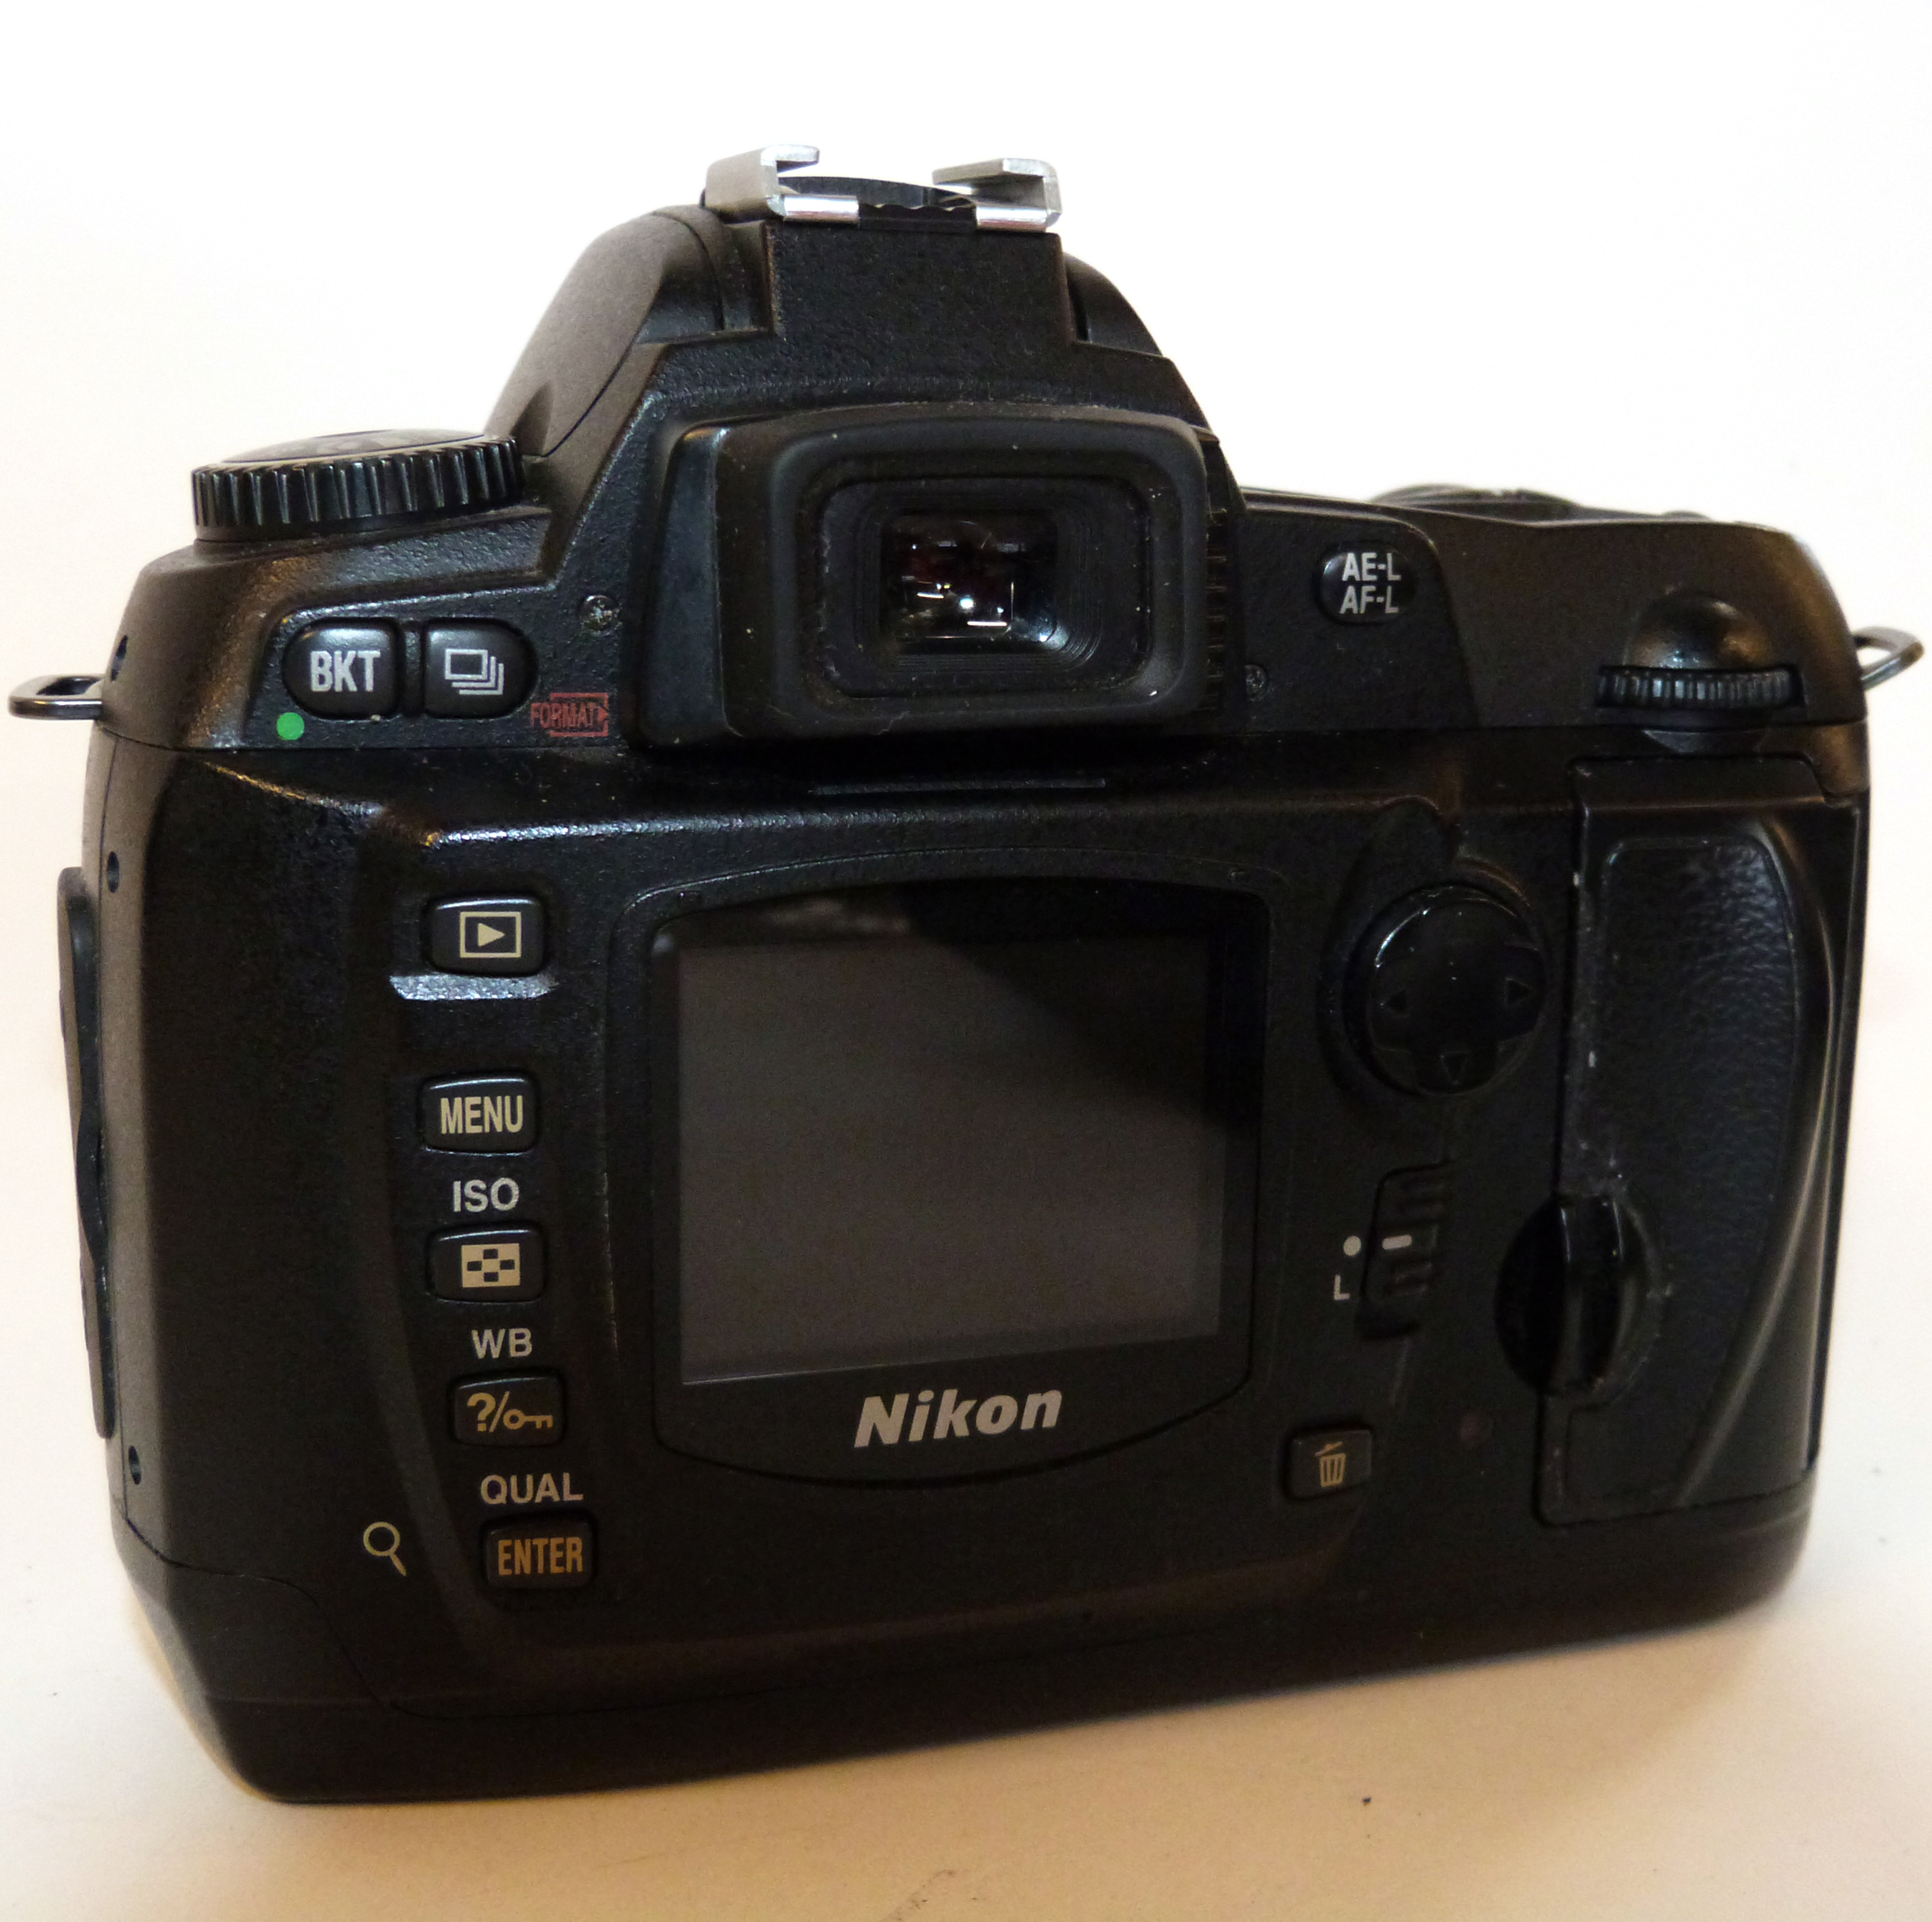 Nikon D70 digital camera together with Nikon AF-S Nikkor 18-70mm lens, charger and fitted case - Image 4 of 6